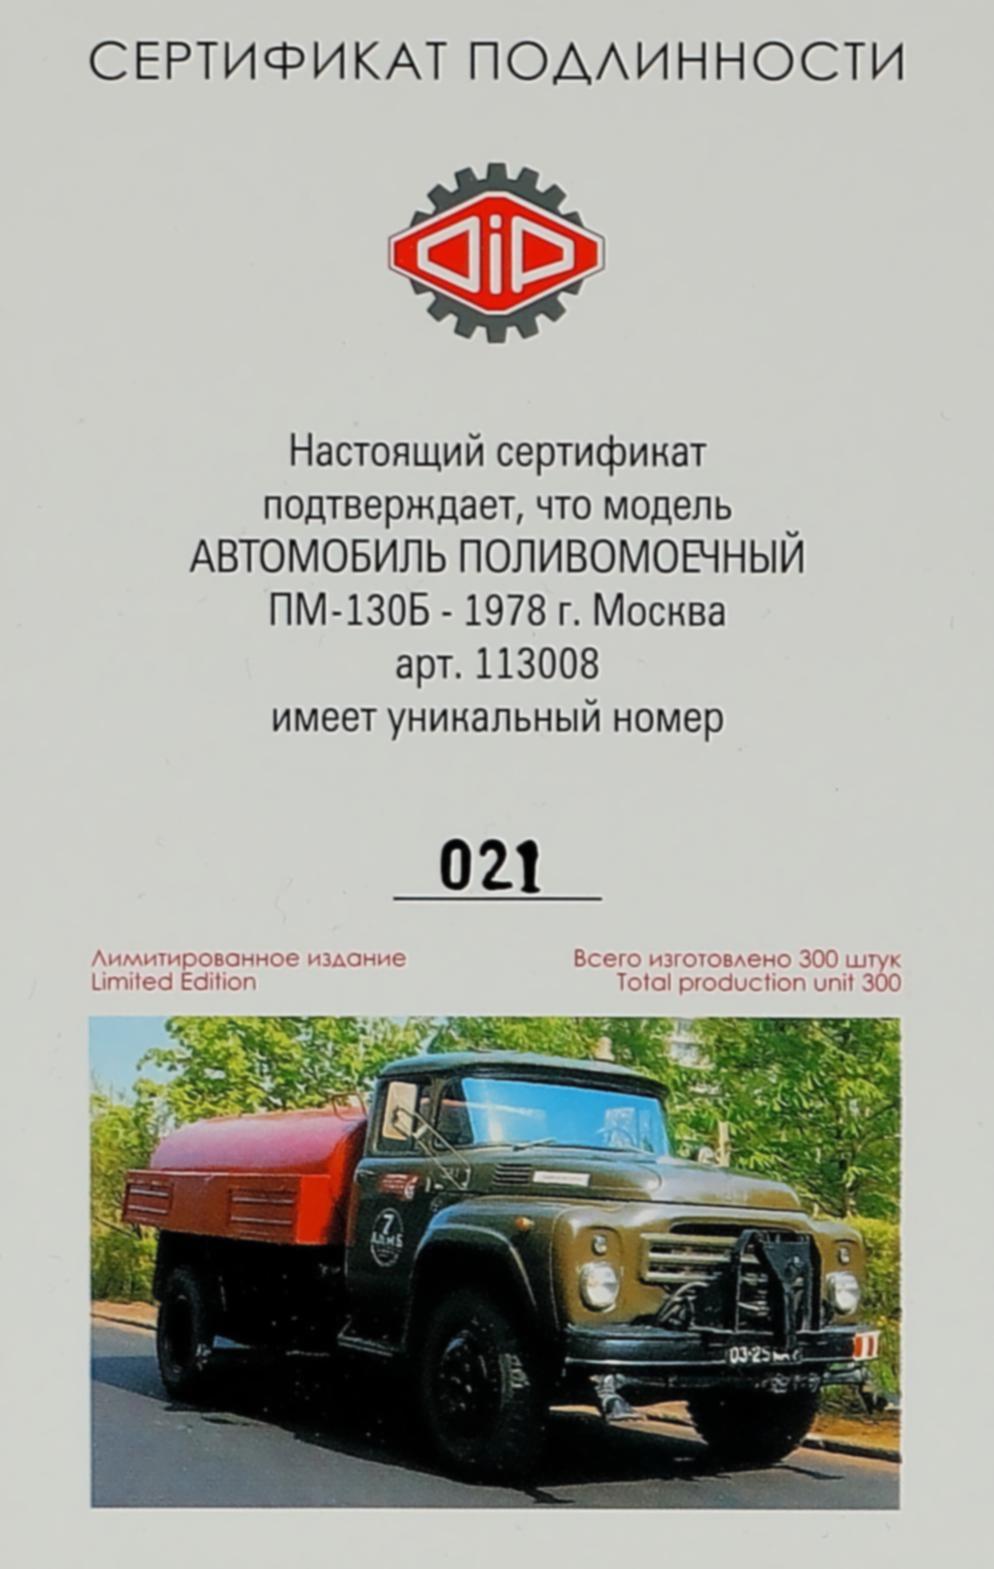 Поливомоечная машина ПМ-130Б — опора советских коммунальщиков